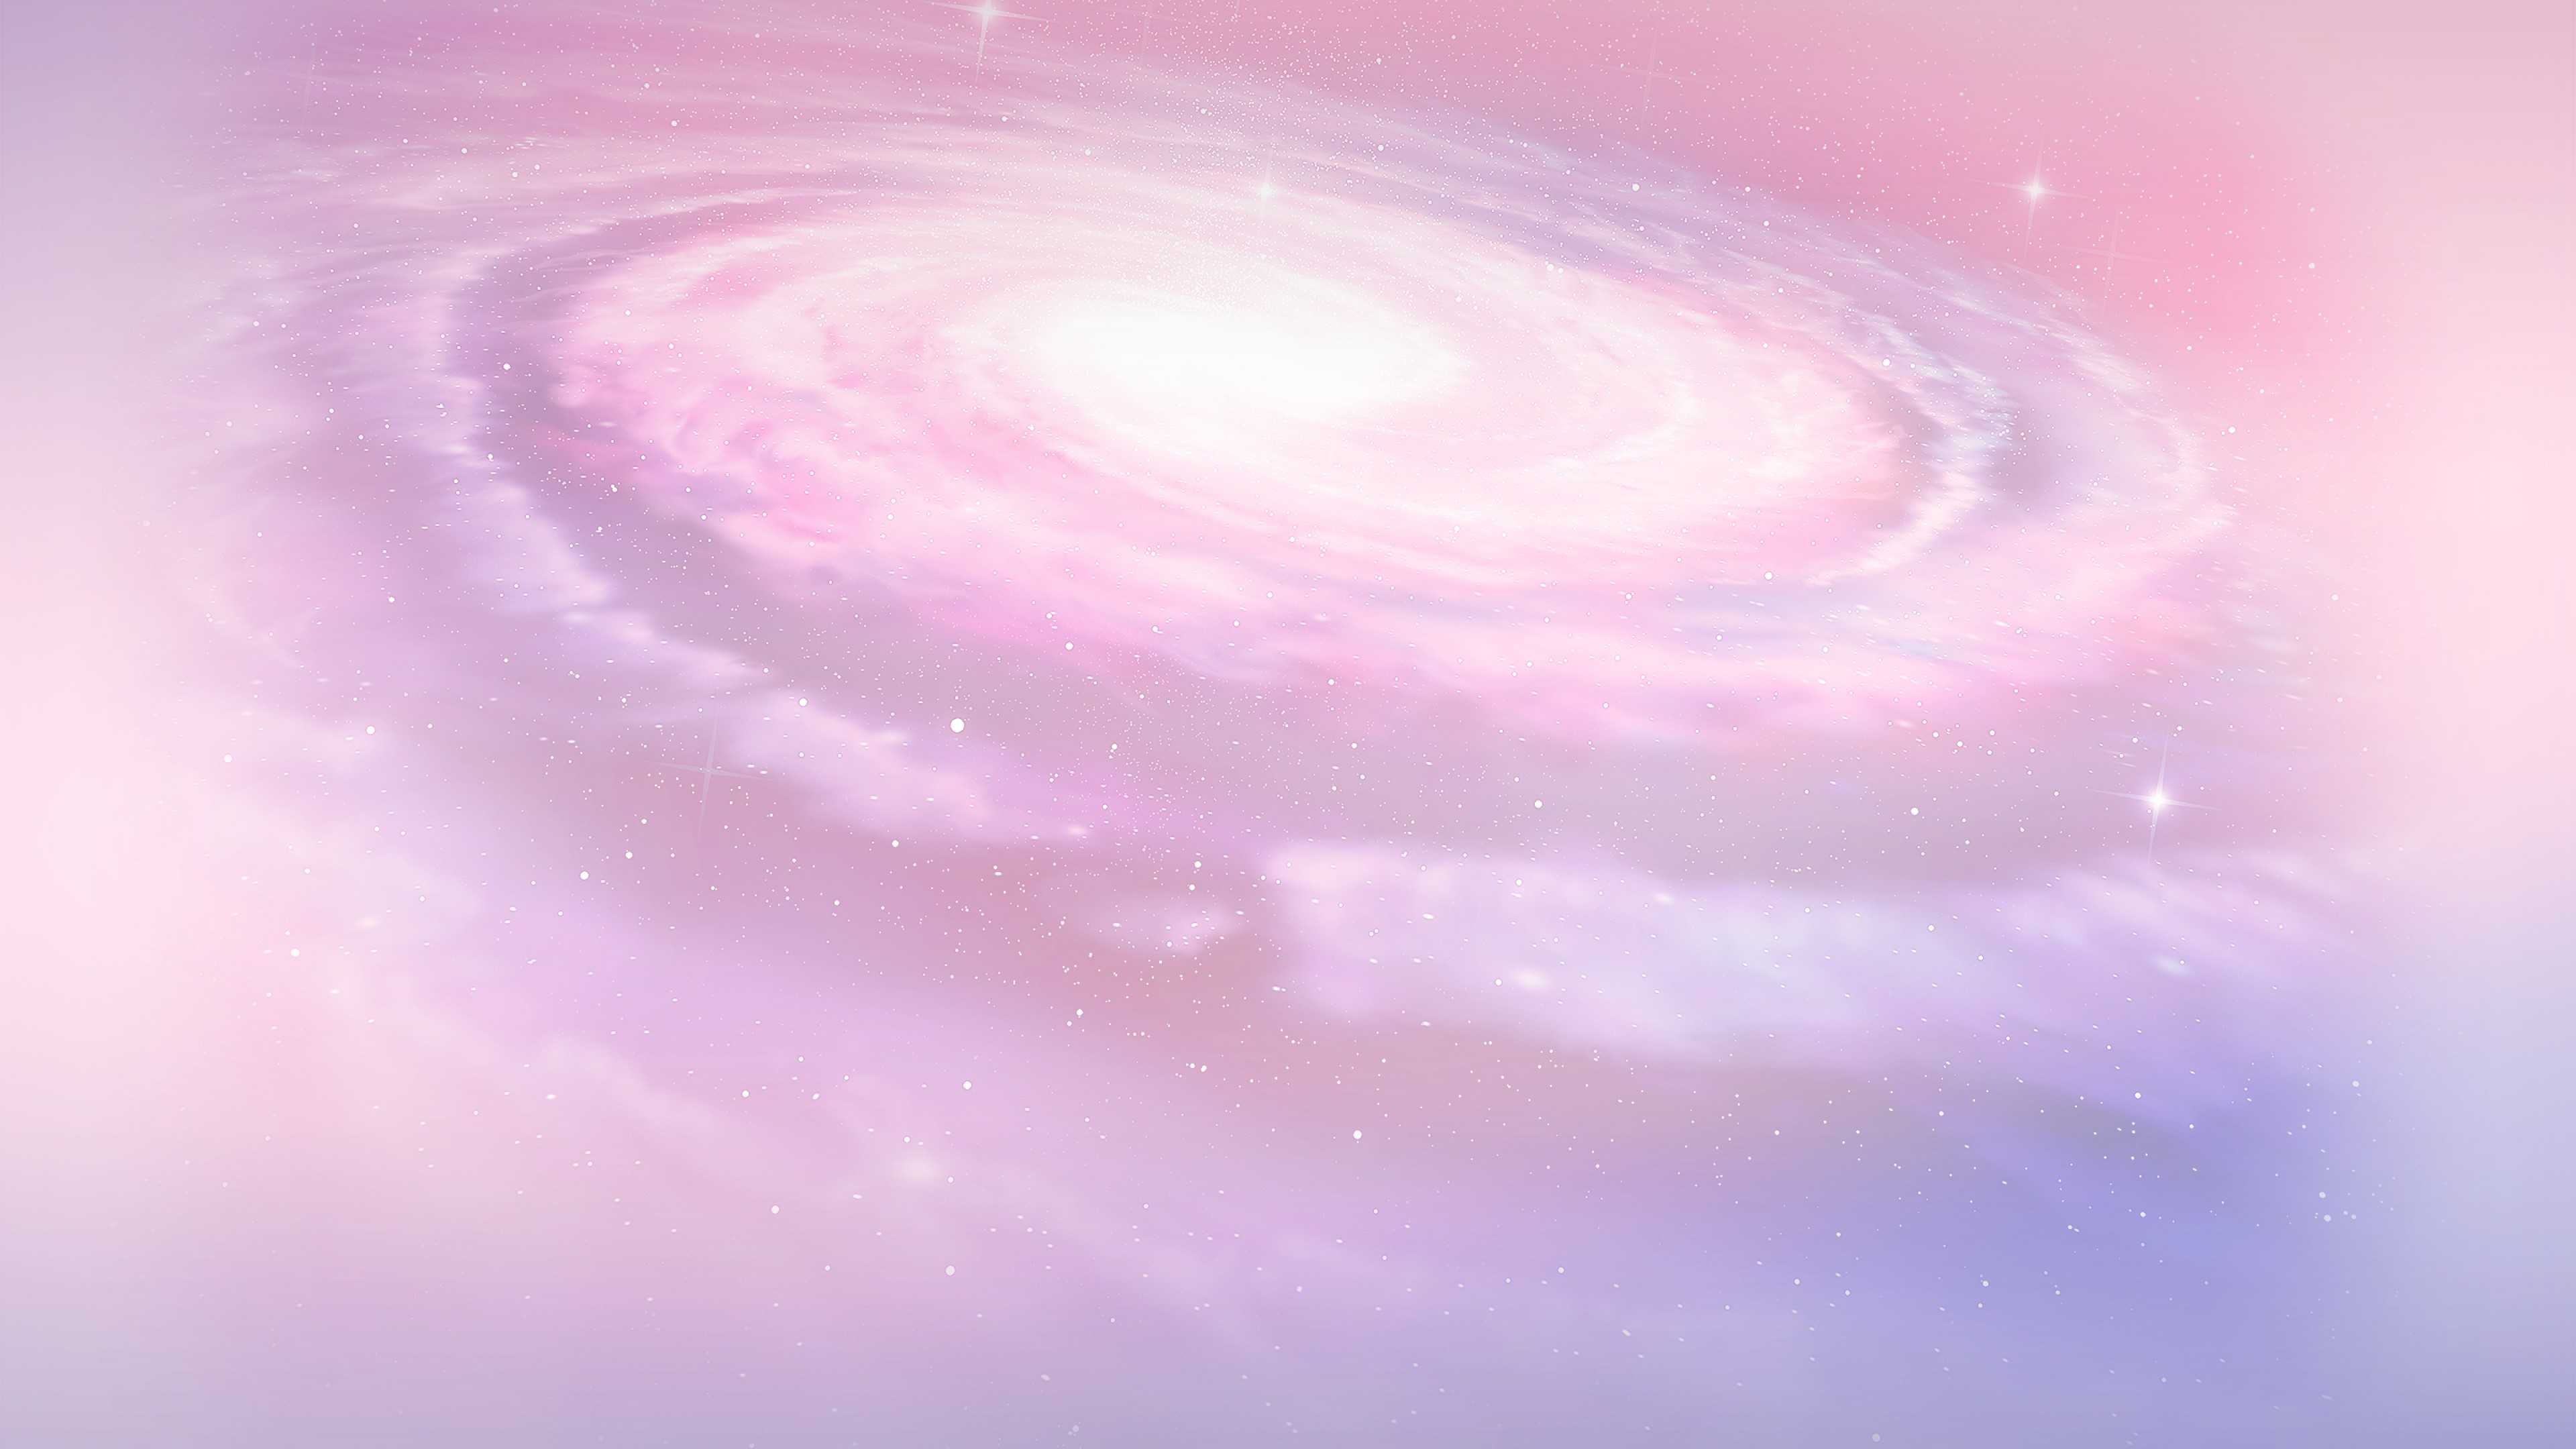 Hình nền cute galaxy - Thiết kế độc đáo và dễ thương, hình nền cute galaxy sẽ làm bạn trở nên nổi bật hơn trong đám đông. Hãy cập nhật ngay hình nền này vào máy tính của bạn để bắt đầu một ngày mới tràn đầy năng lượng và tự tin.